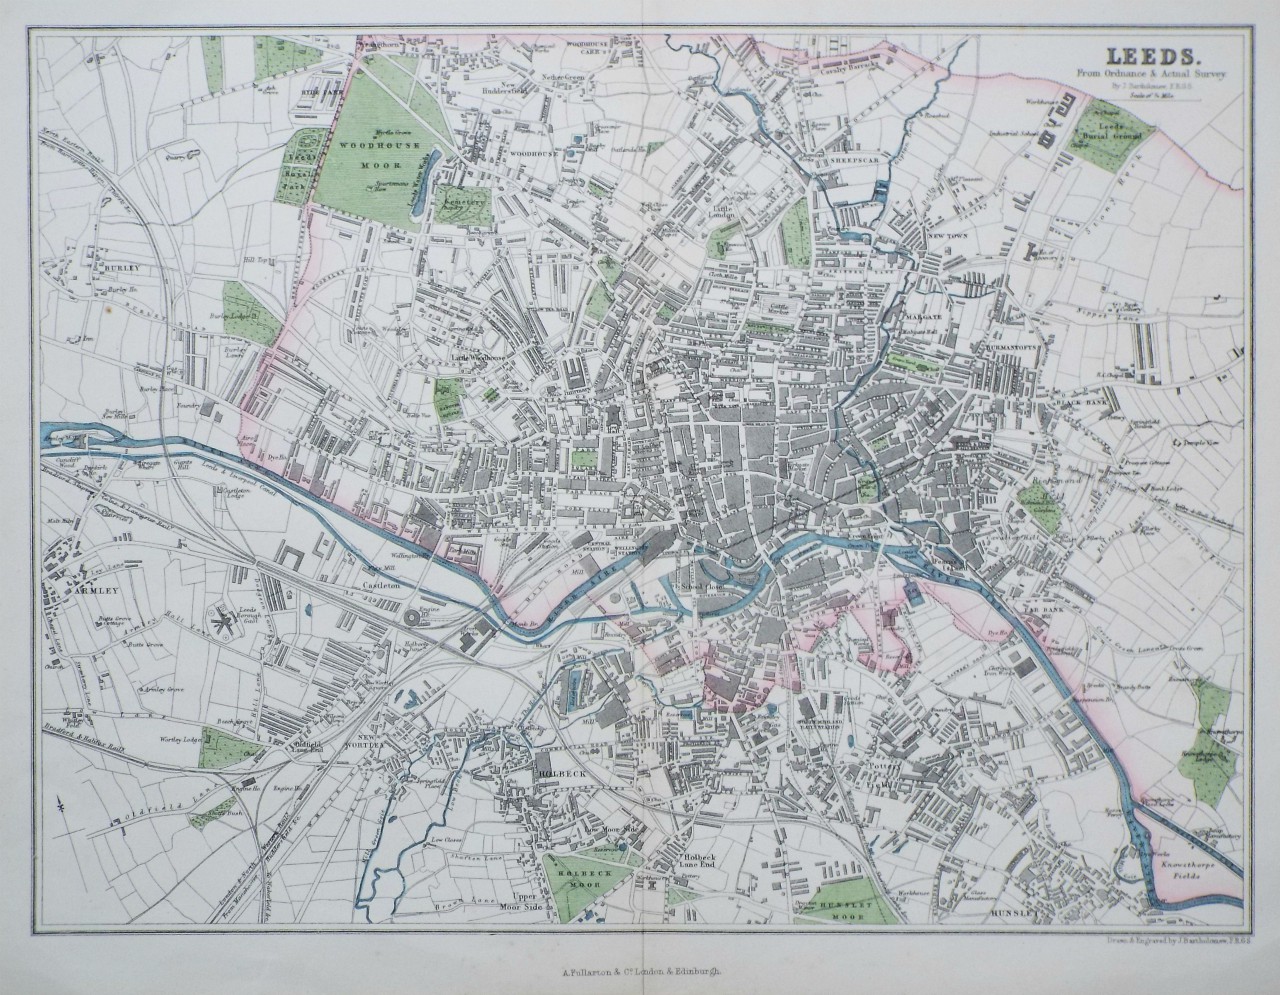 Map of Leeds - Leeds